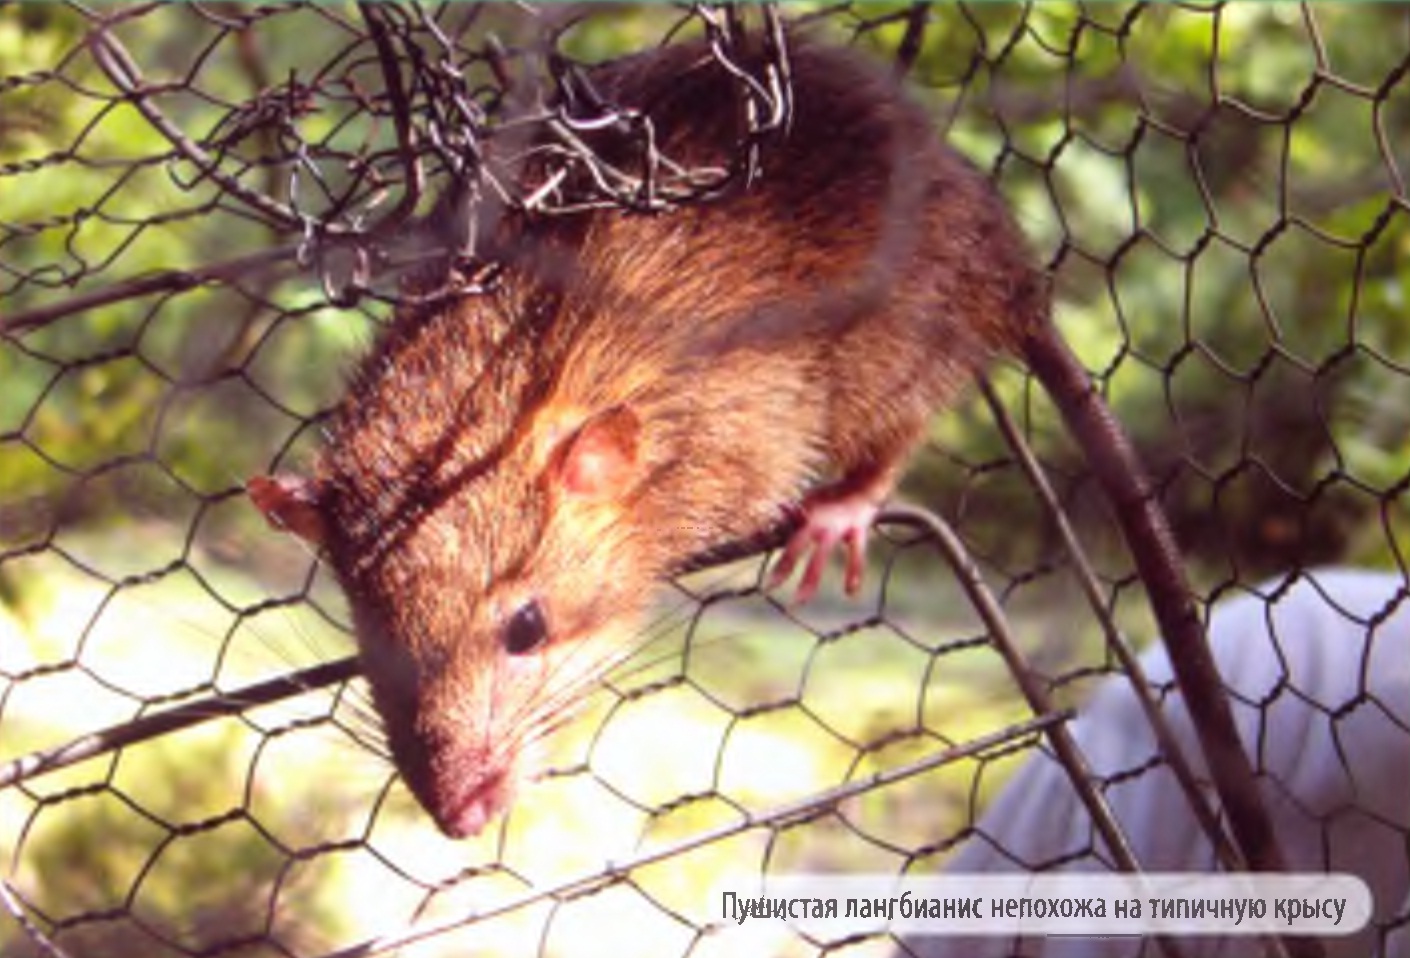 Пушистая лангбианис непохожа на типичную крысу.